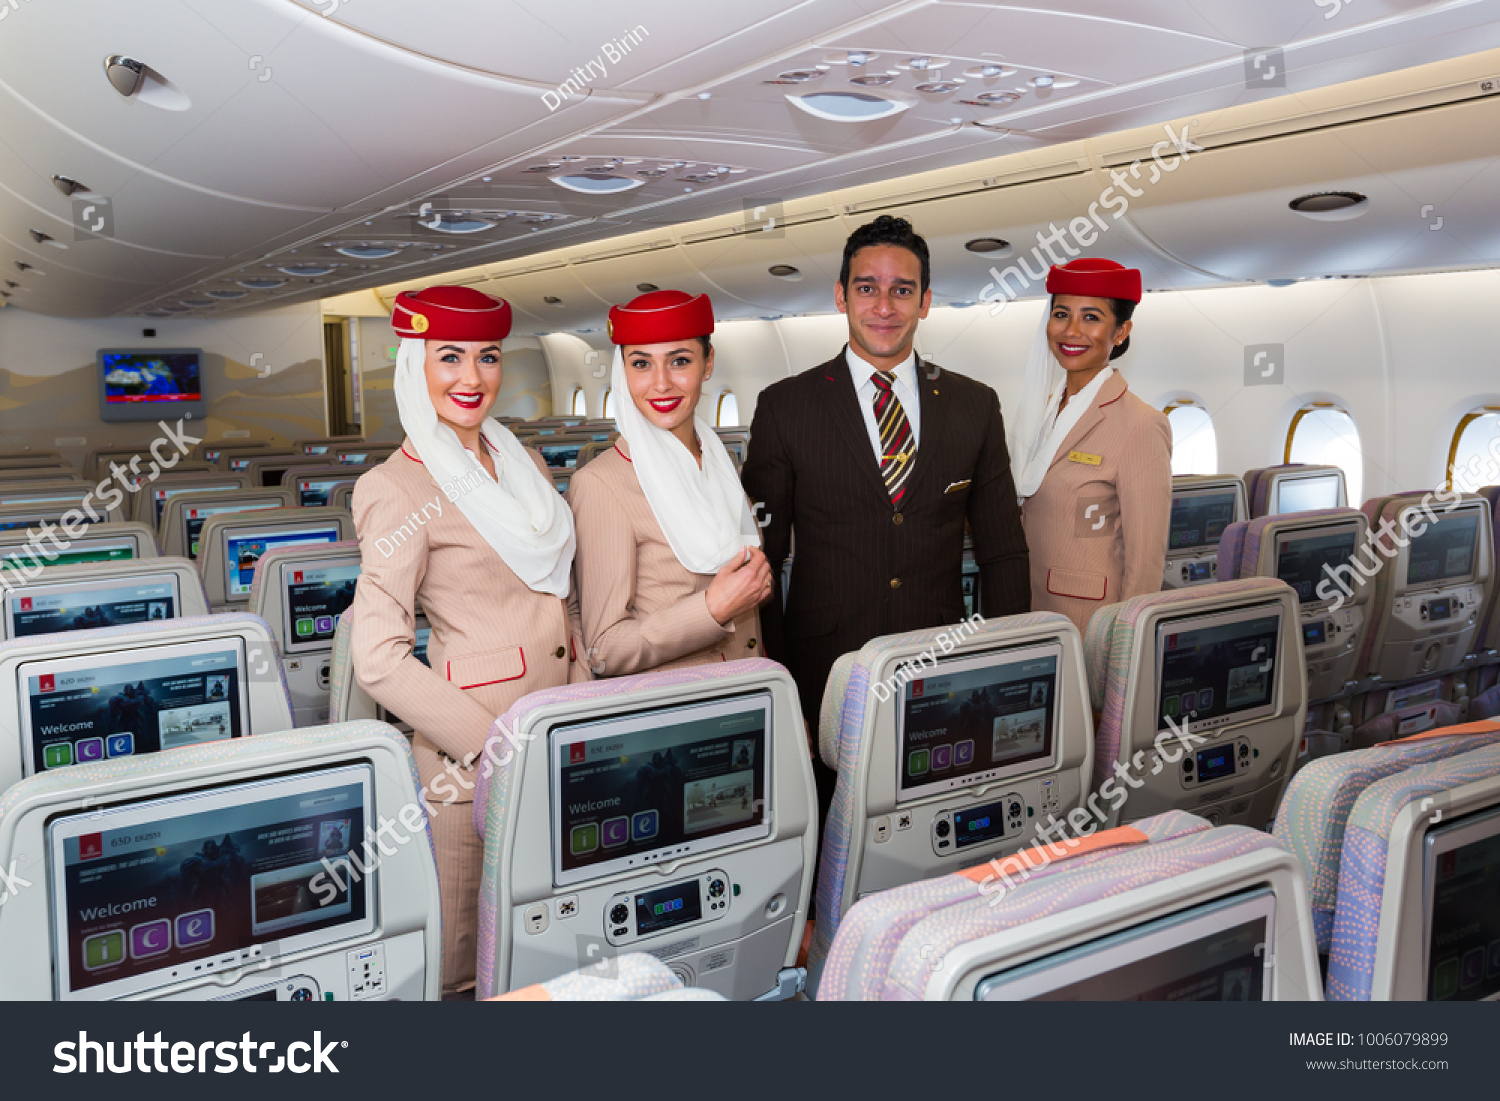 Сайт эмиратские авиалинии. Emirates Airlines 777. Airbus a380 стюардесса. Эмирейтс бортпроводники. Экипаж Эмирейтс 380.